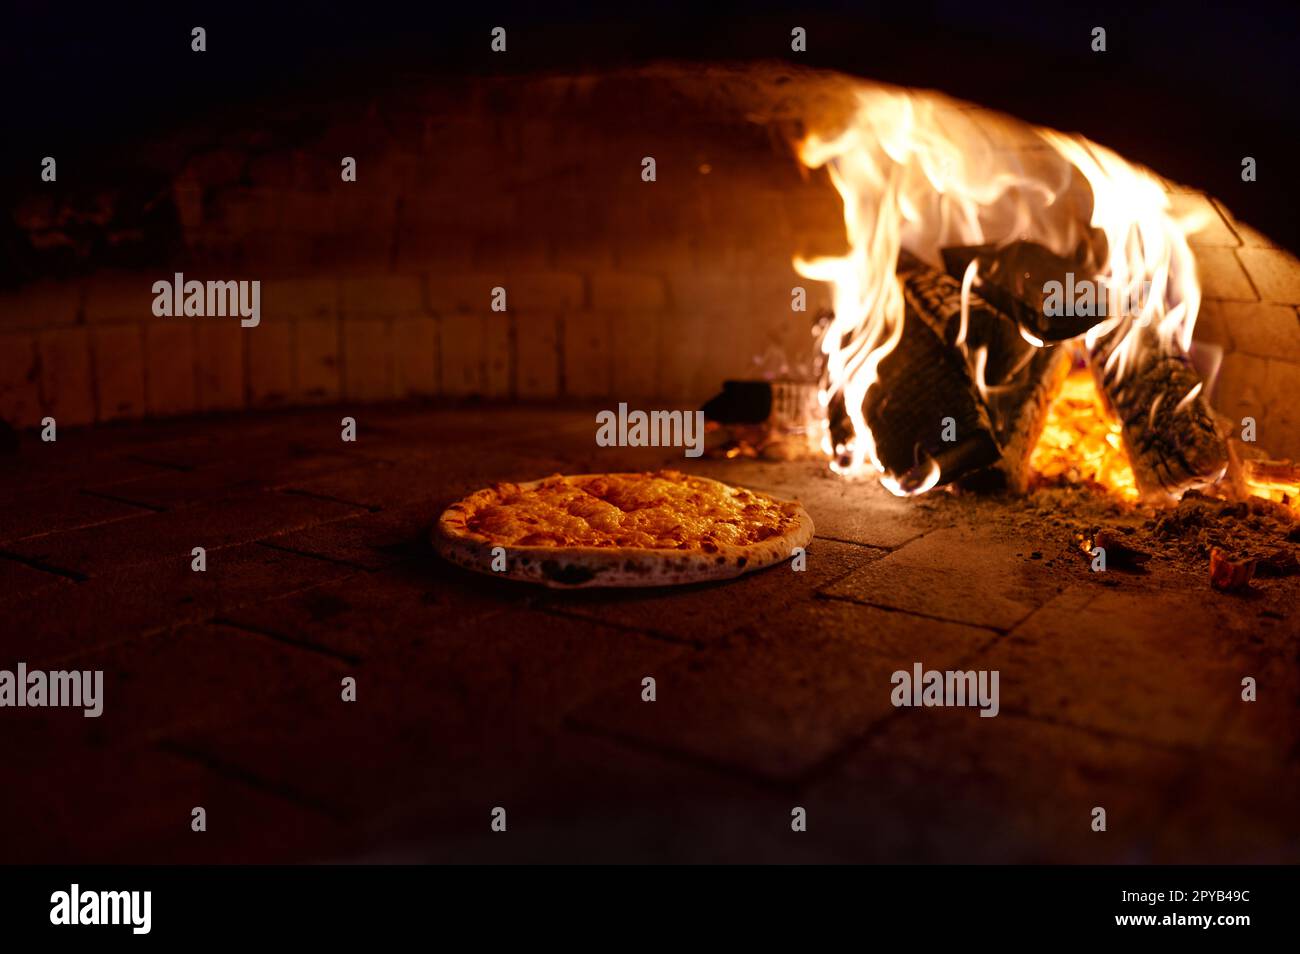 La pizza est cuite dans un four à bois traditionnel avec cheminée Banque D'Images